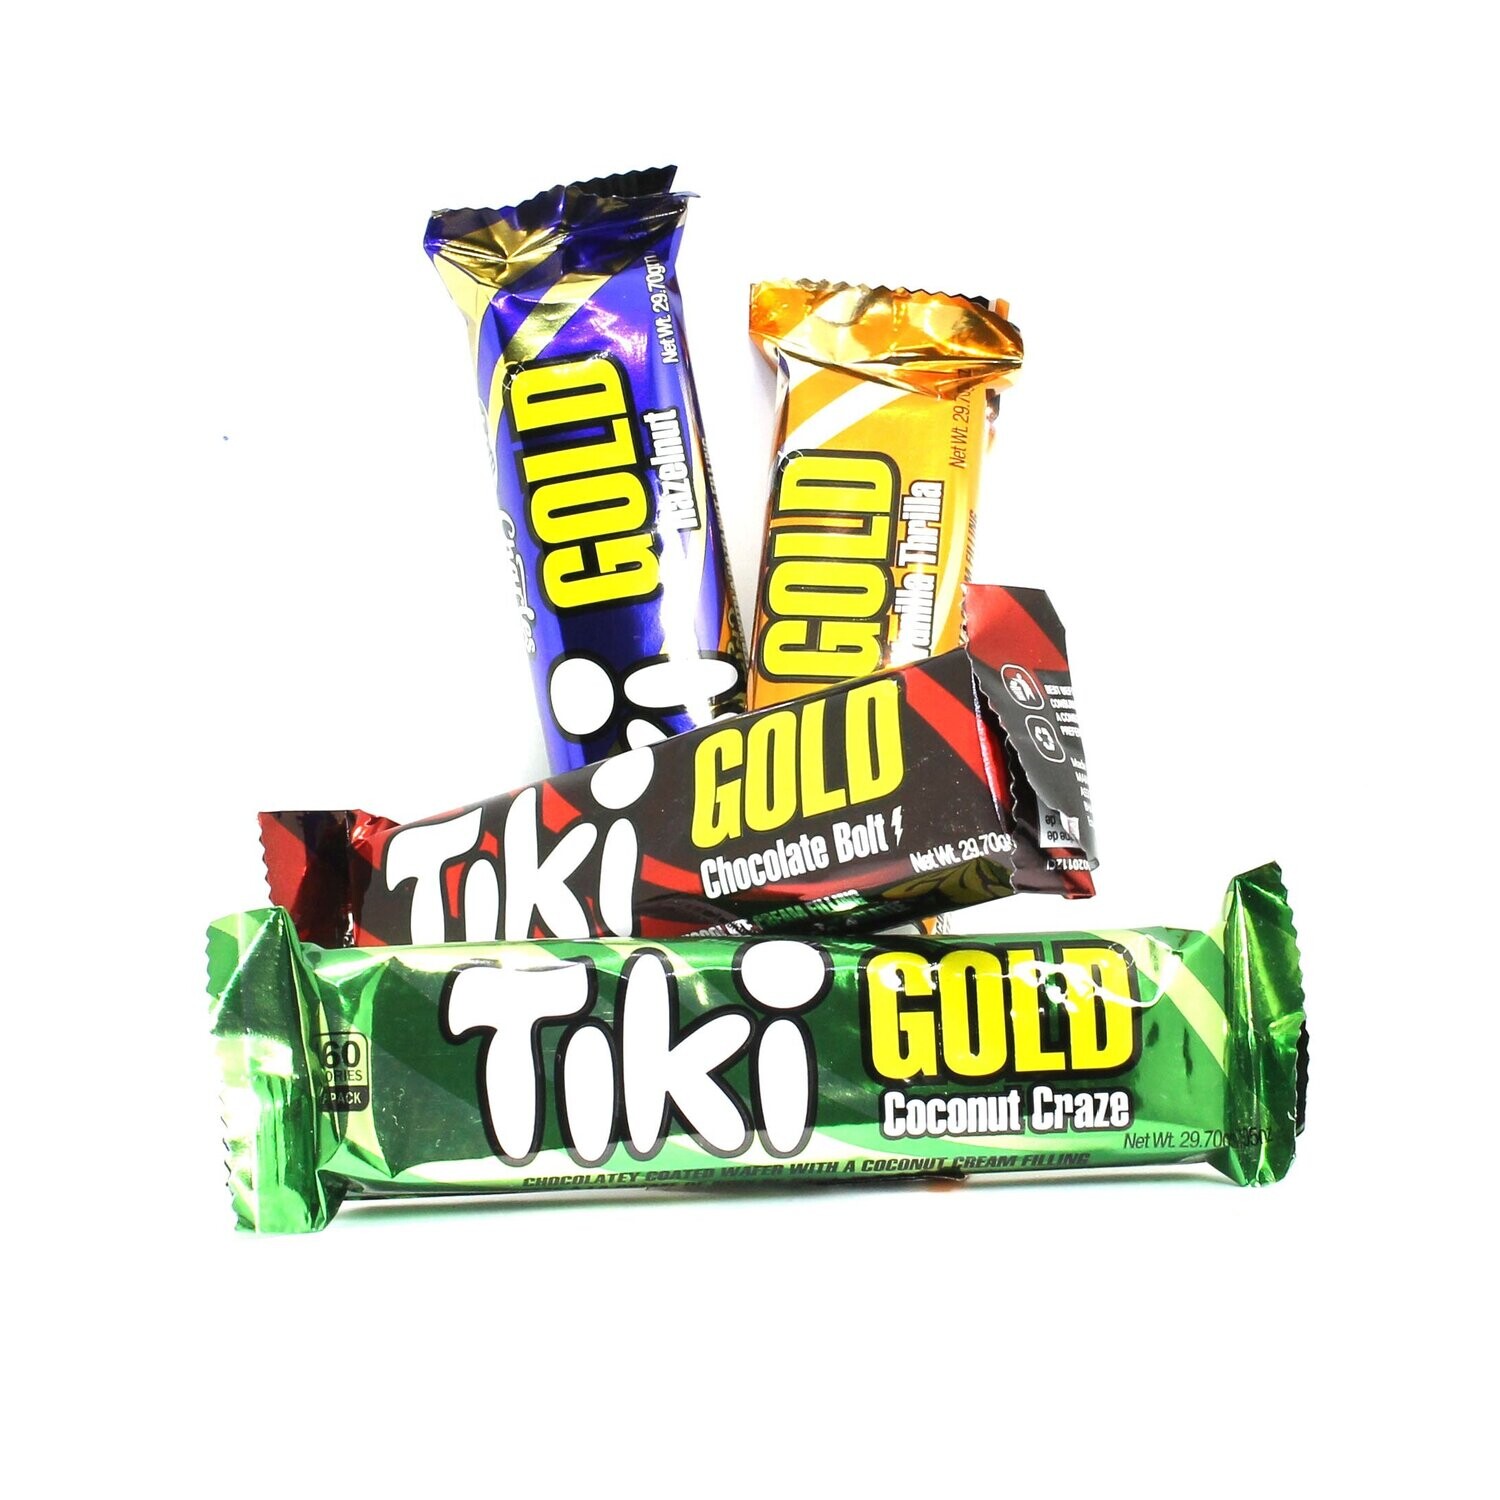 Tiki Gold